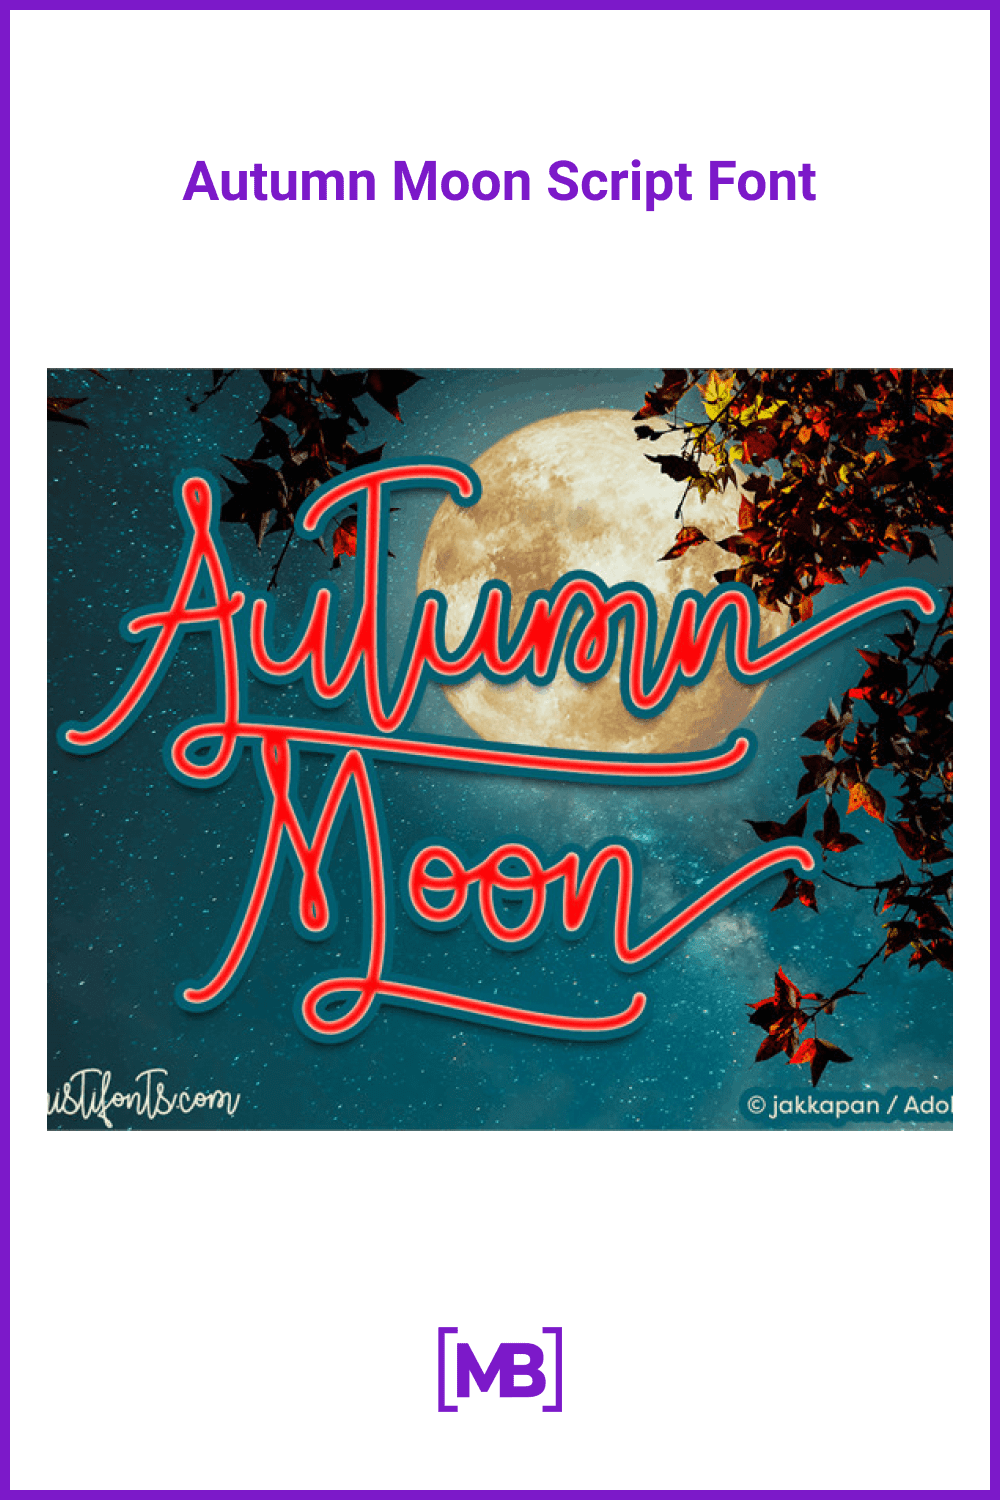 Autumn Moon Script Font.